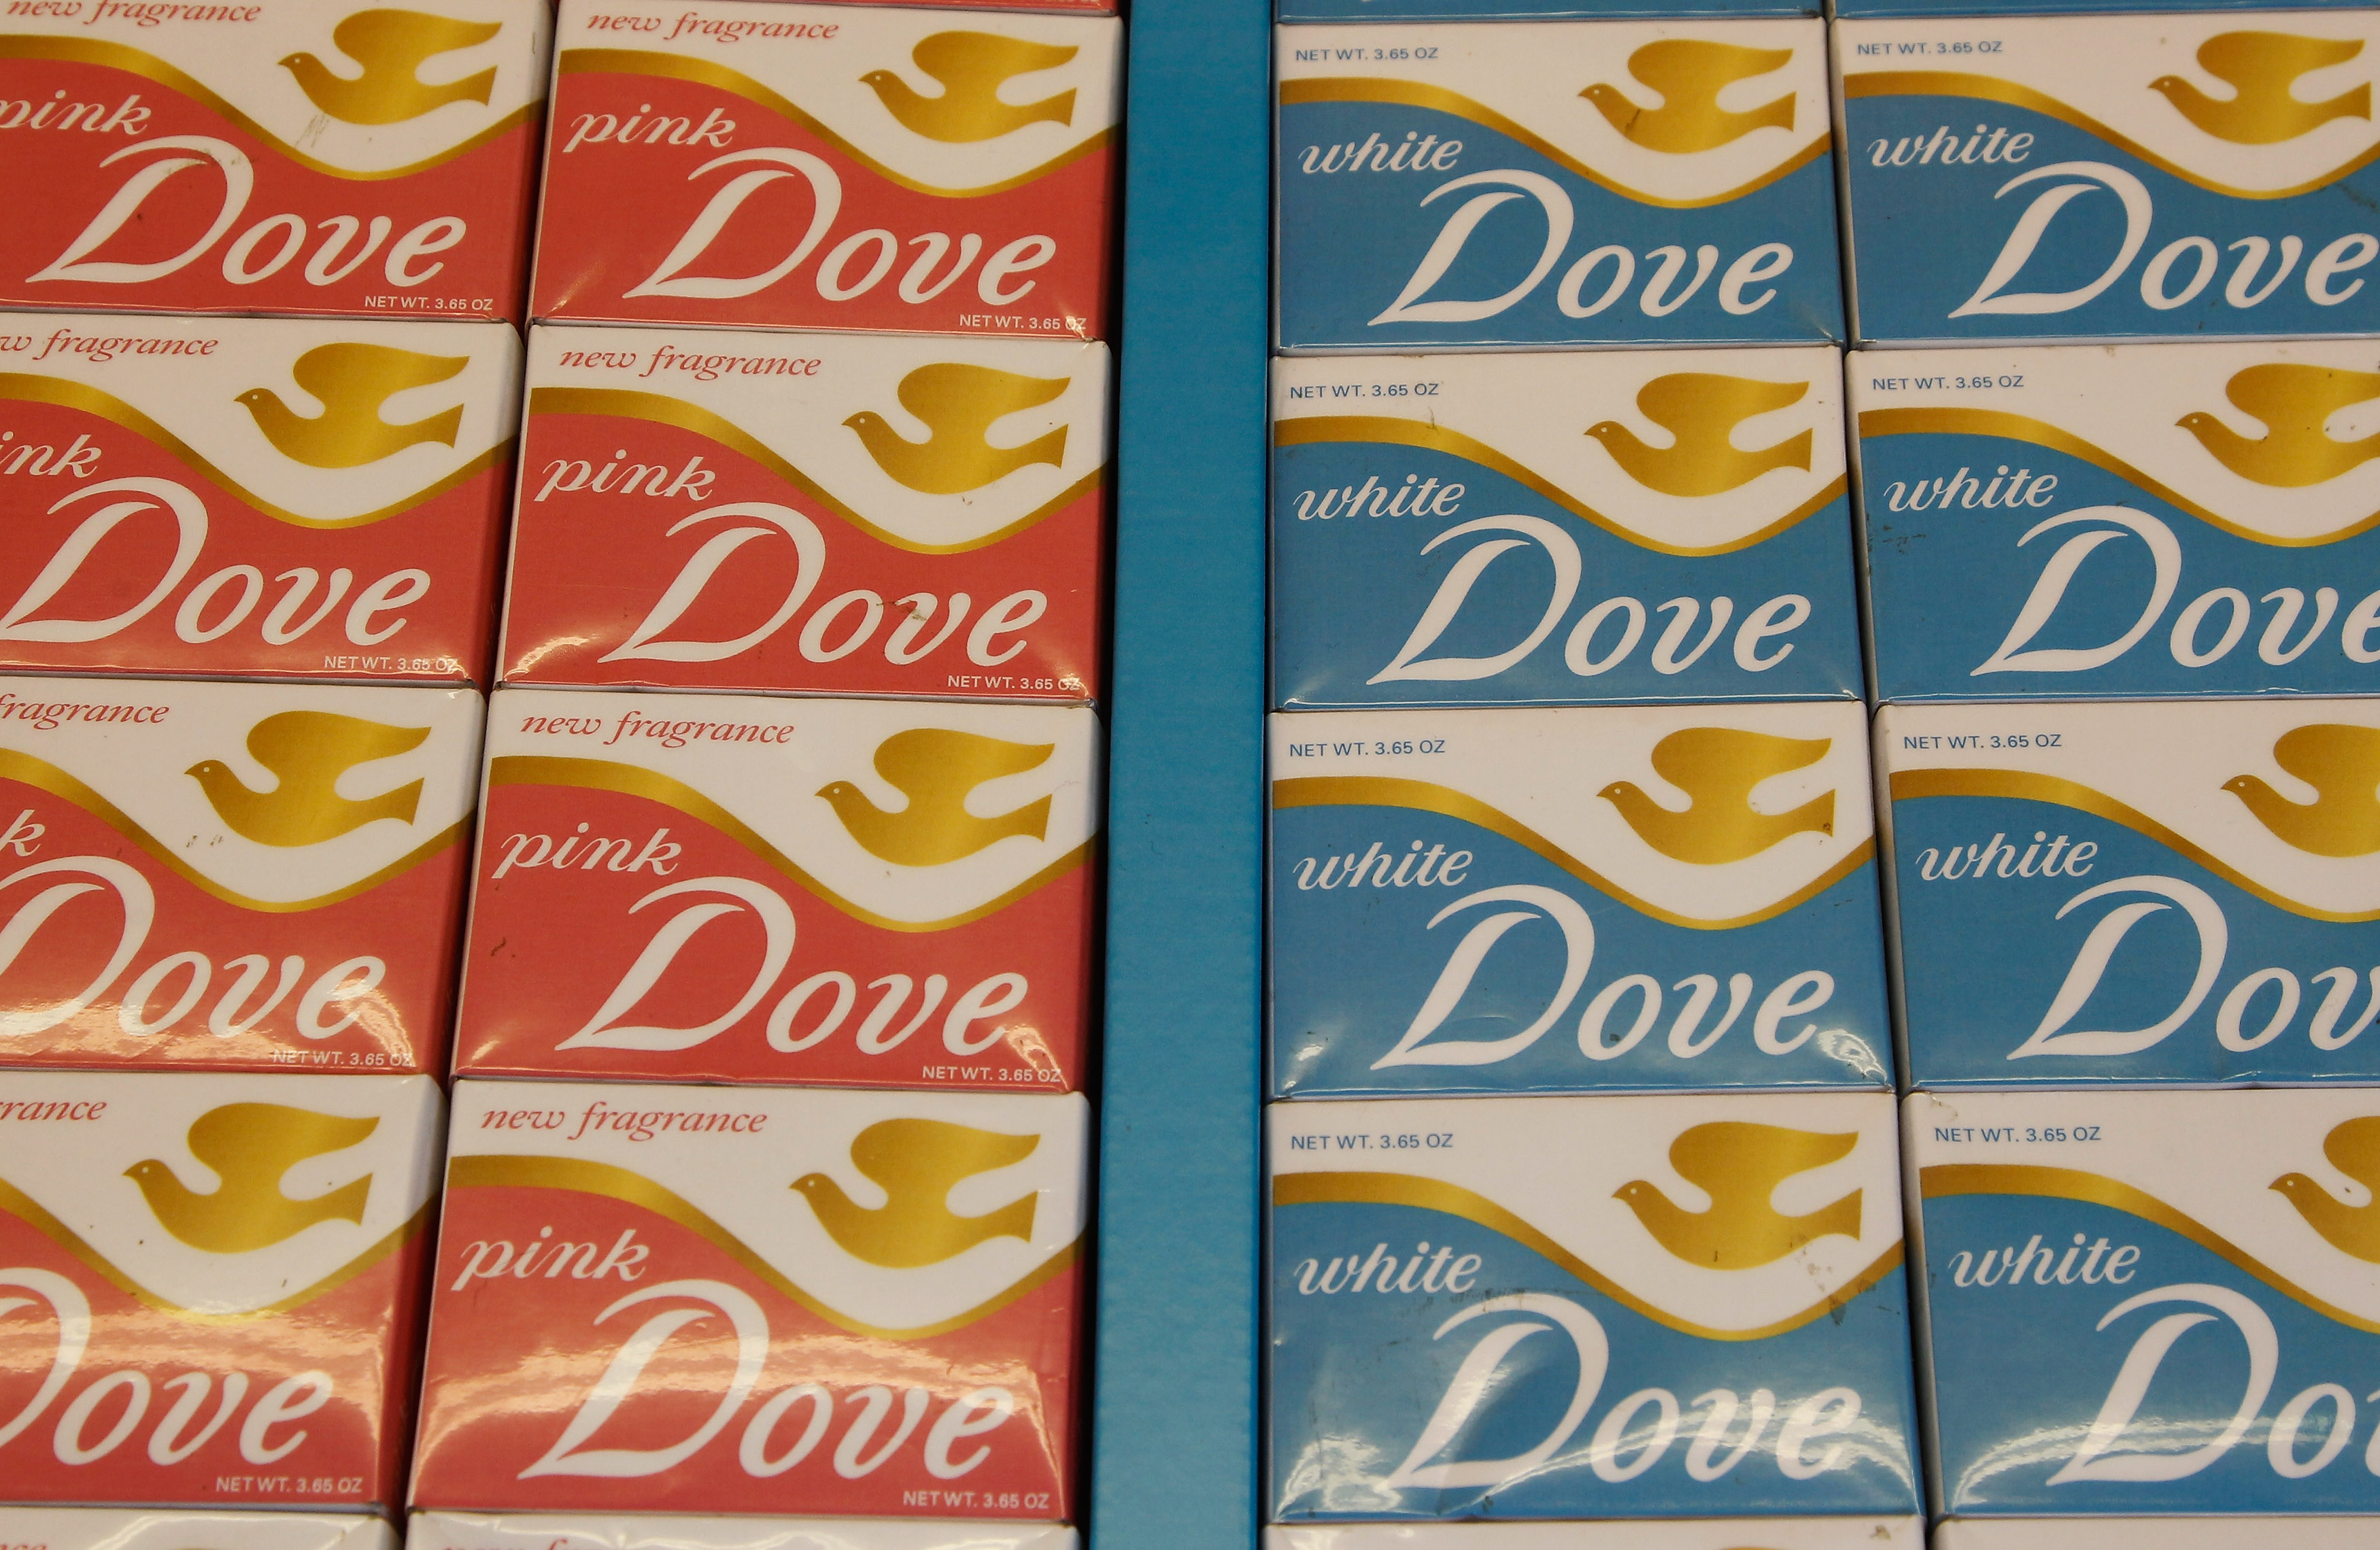 Dove yanks tone-deaf ad